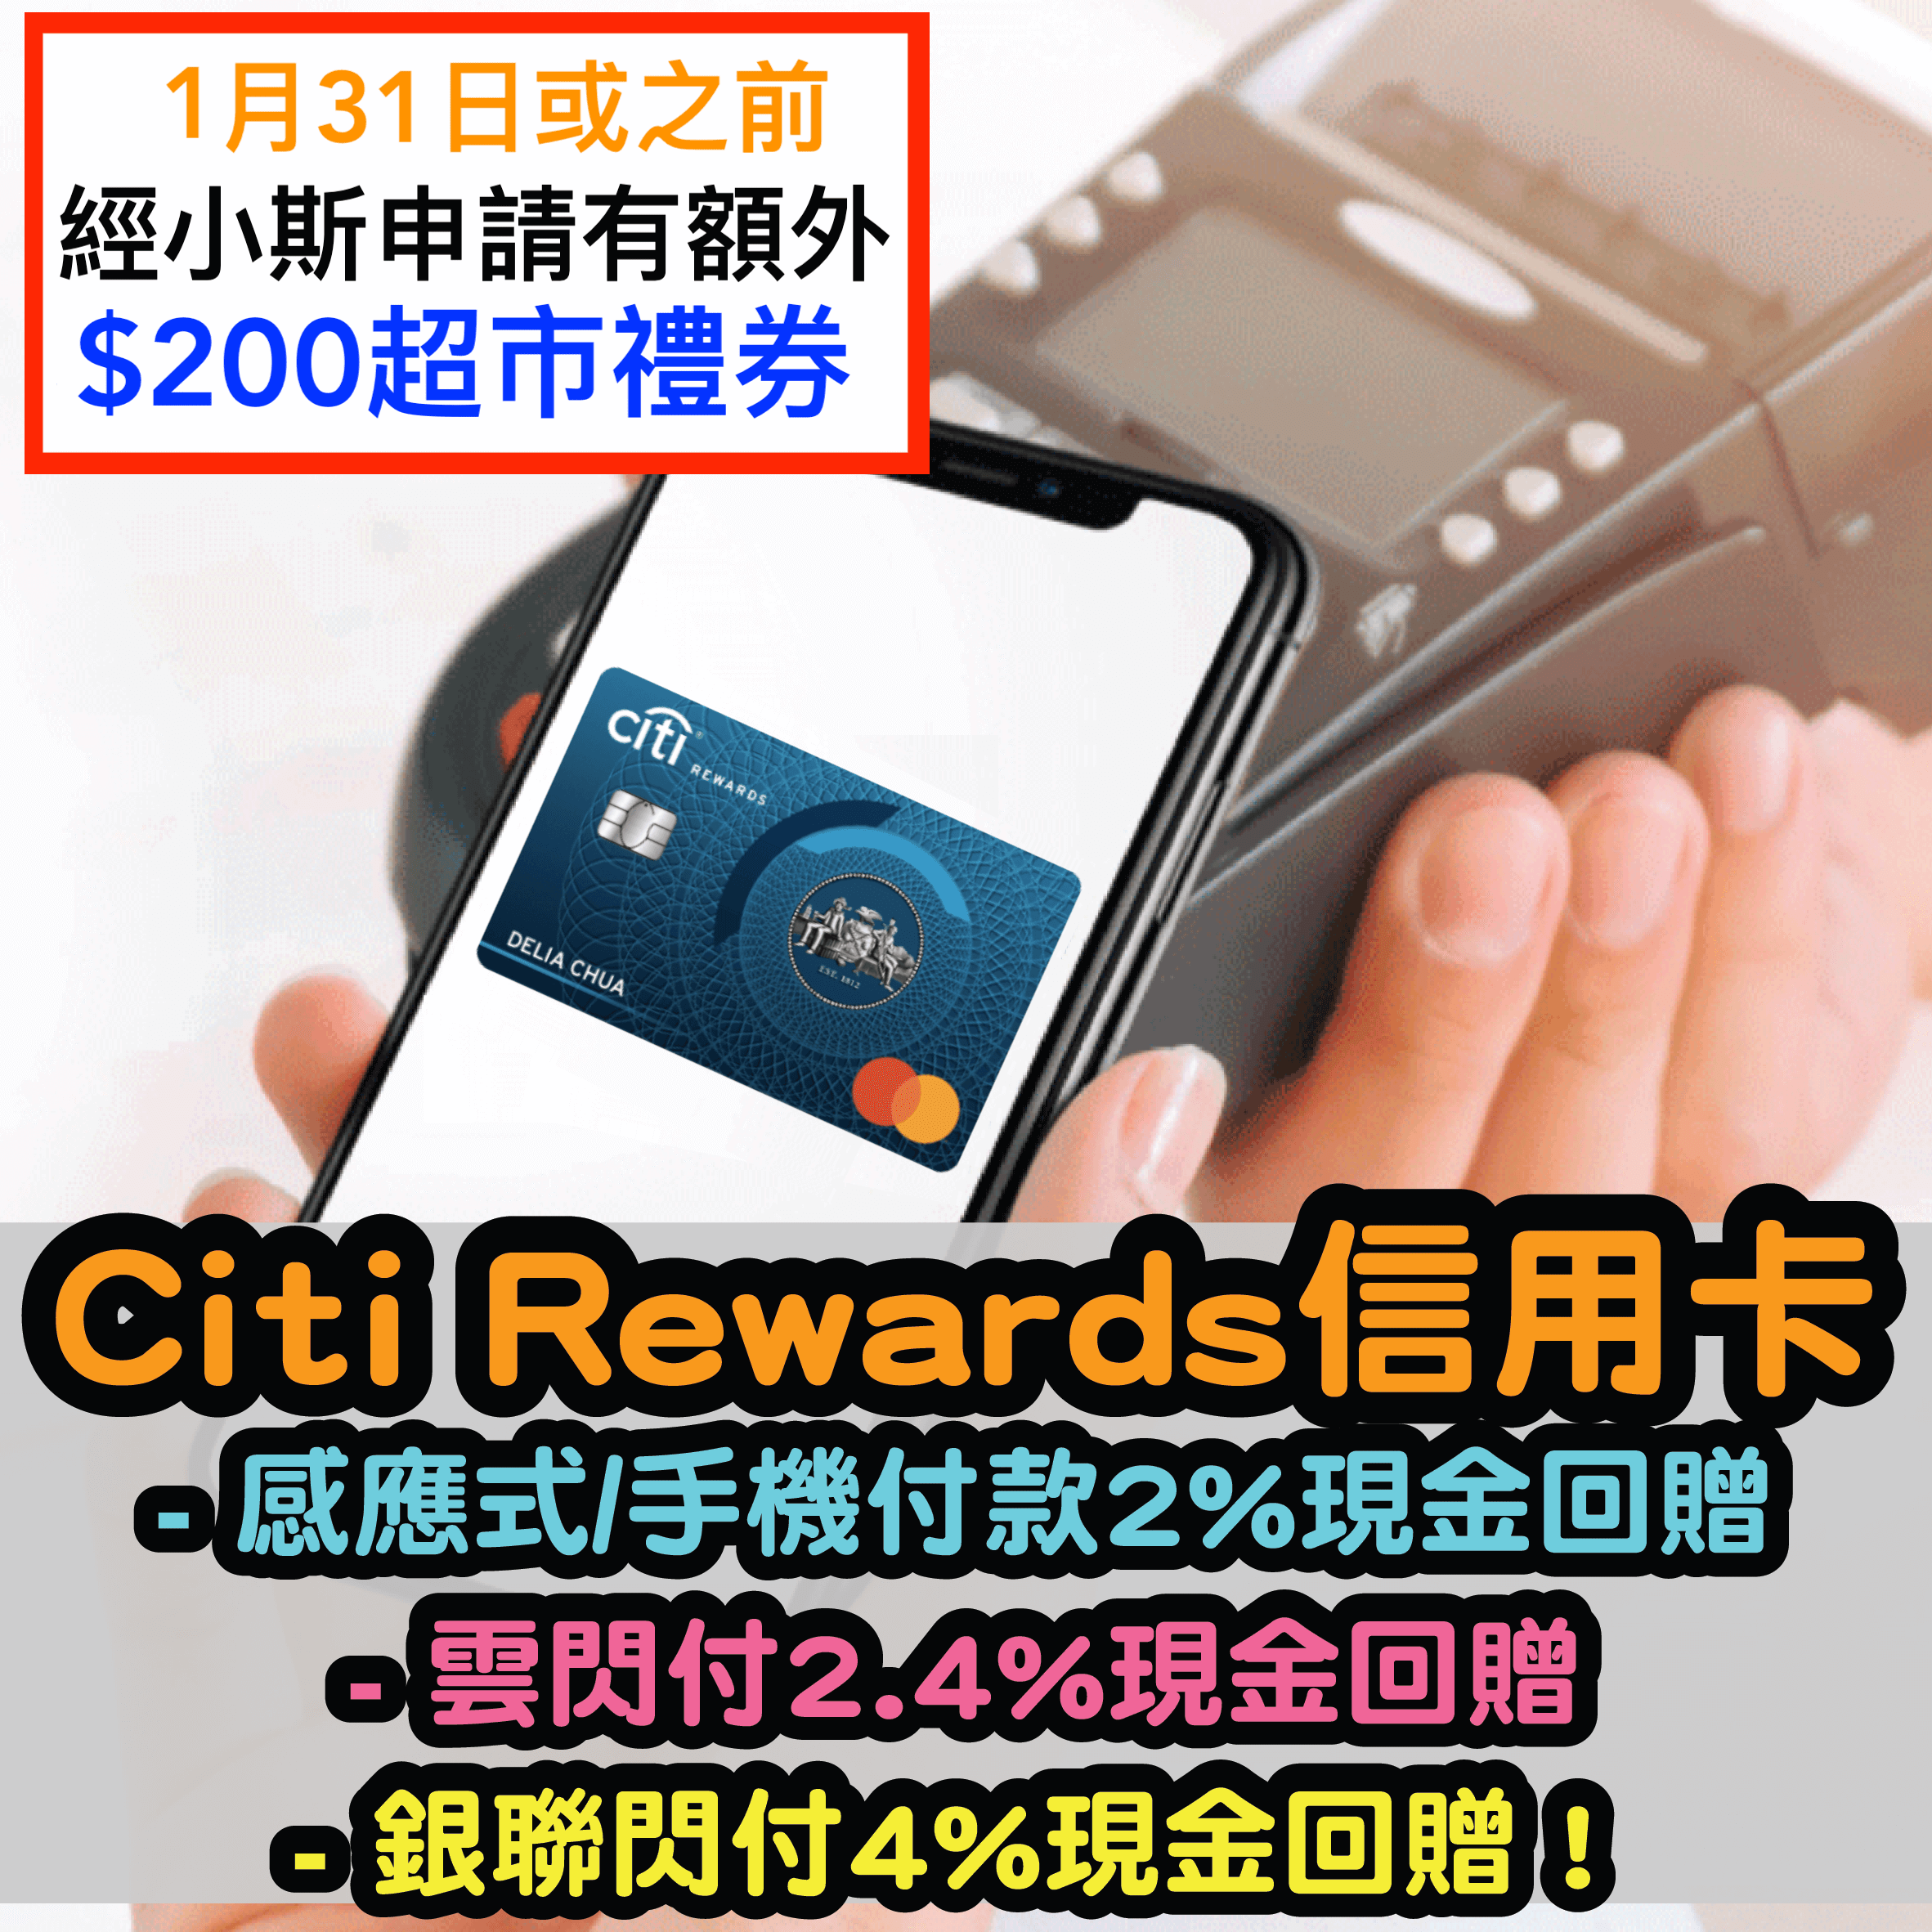 (小斯額外送$200) Citi Rewards 信用卡迎新簽$8,000有高達HK$1,120！Payme/支付寶/Wechat Pay都計迎新！感應式/手機付款5倍積分；雲閃付6倍積分！銀聯閃付10倍積分！